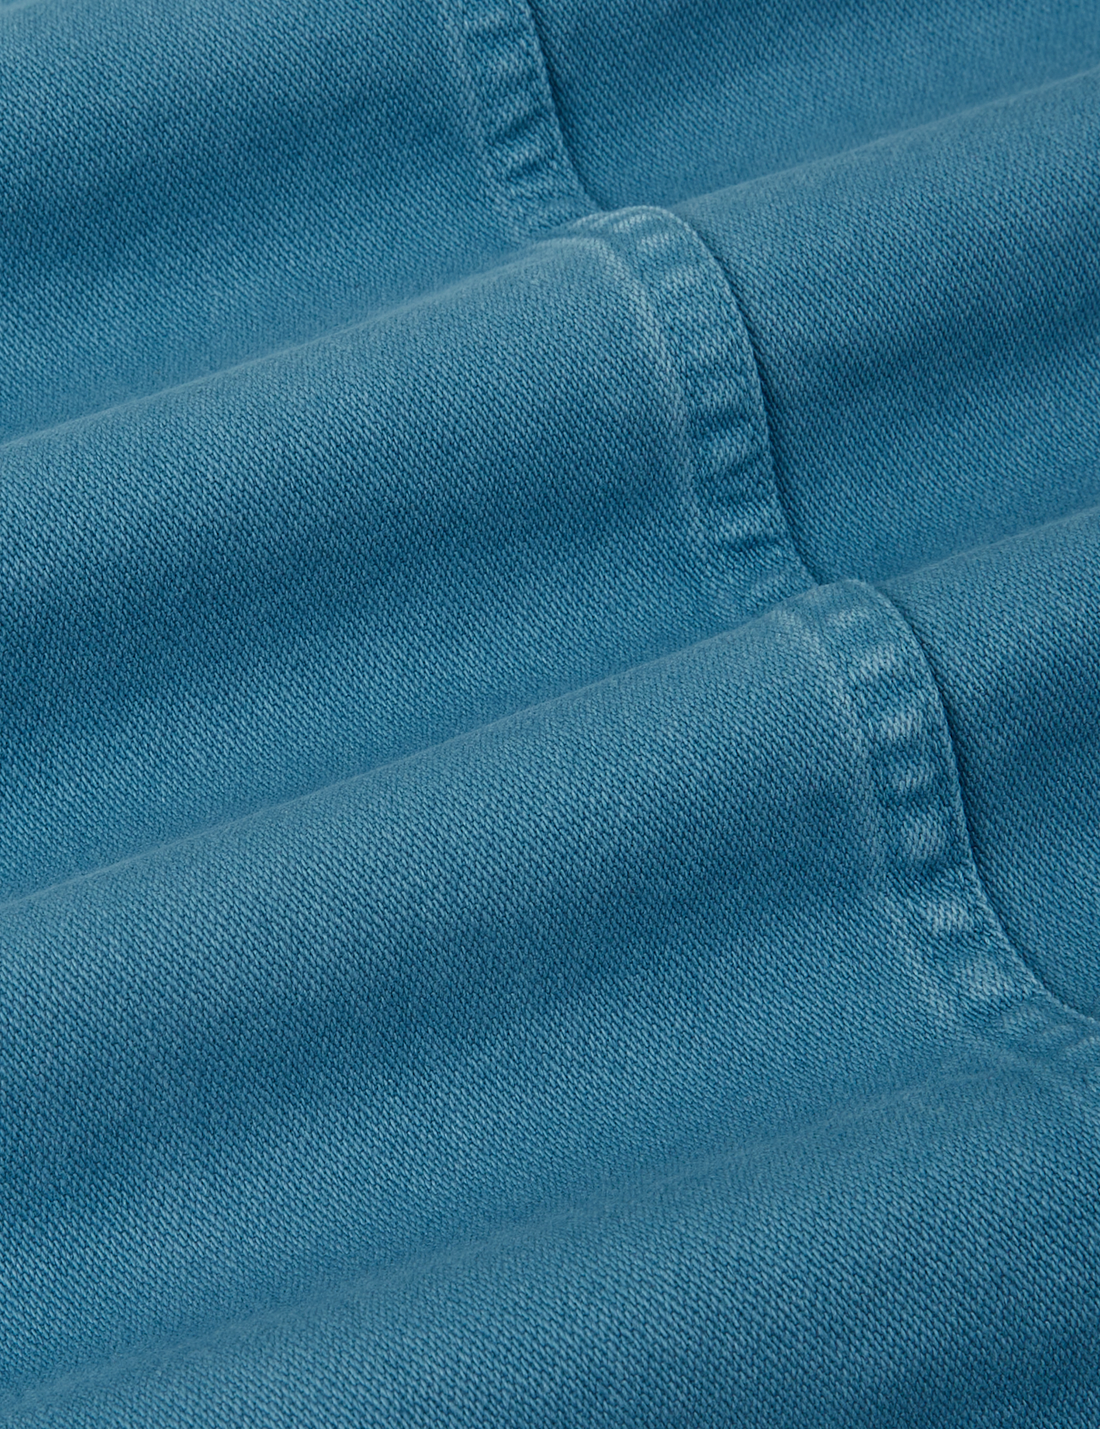 Denim Work Jacket in Marine Blue fabric detail